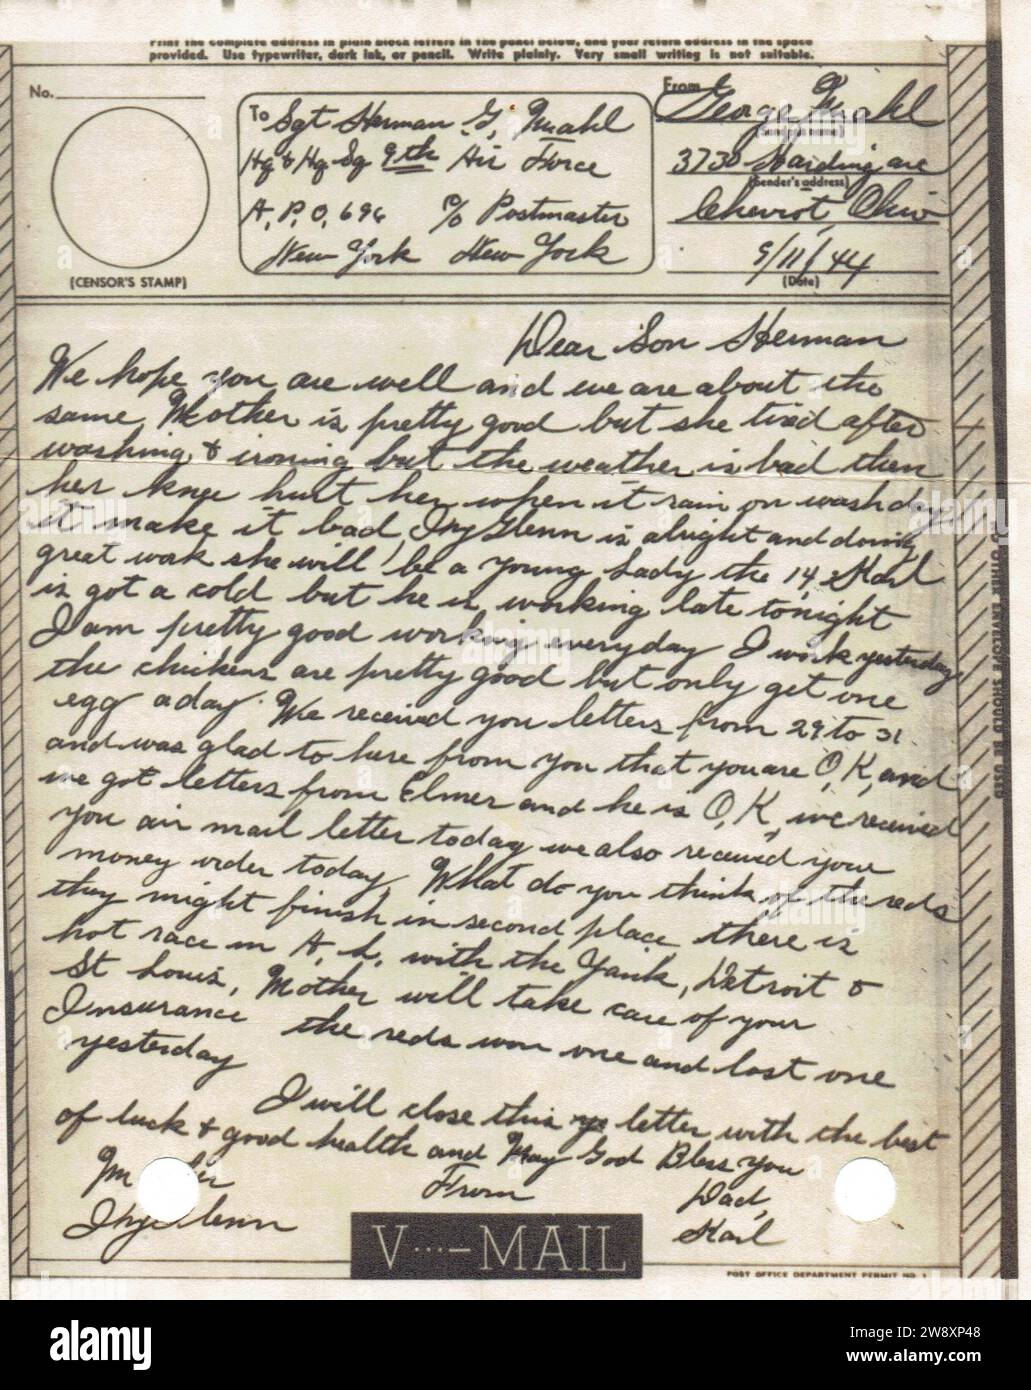 lettre, V Mail, recou pour un soldat de la 9th Air Force, de ses Parents de Cheviot, Ohio, Novembre 1944 Stockfoto